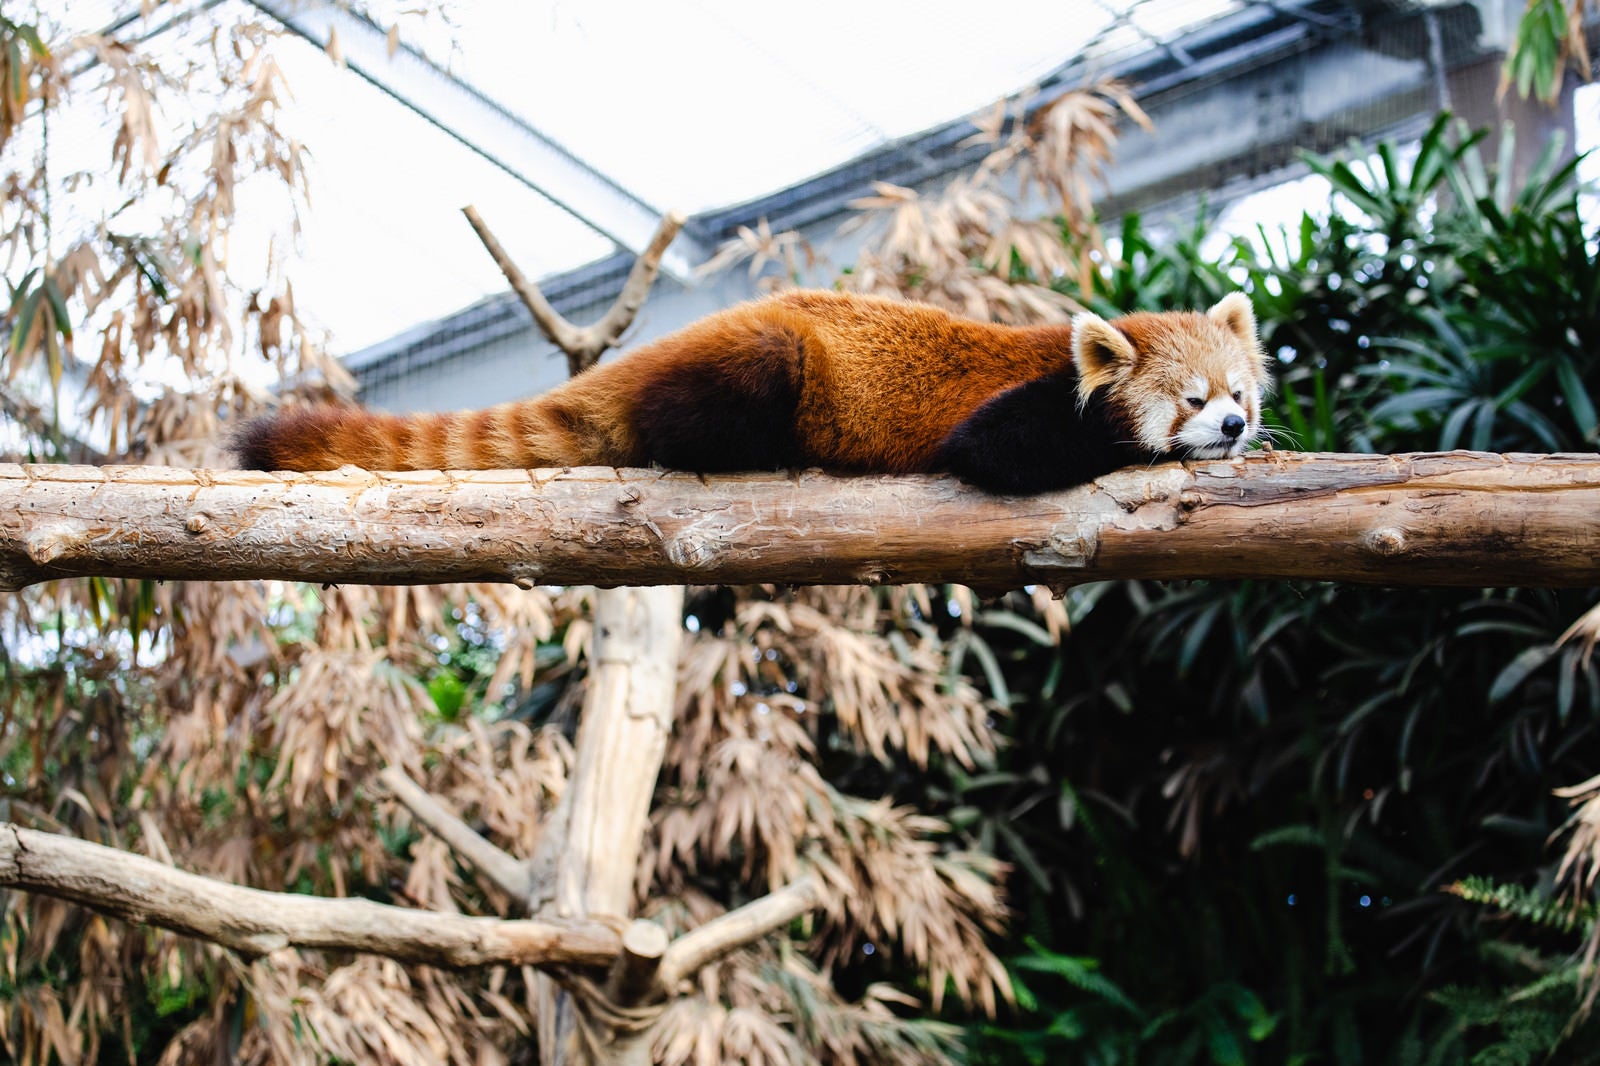 「寝たら落ちそうなレッサーパンダ」の写真